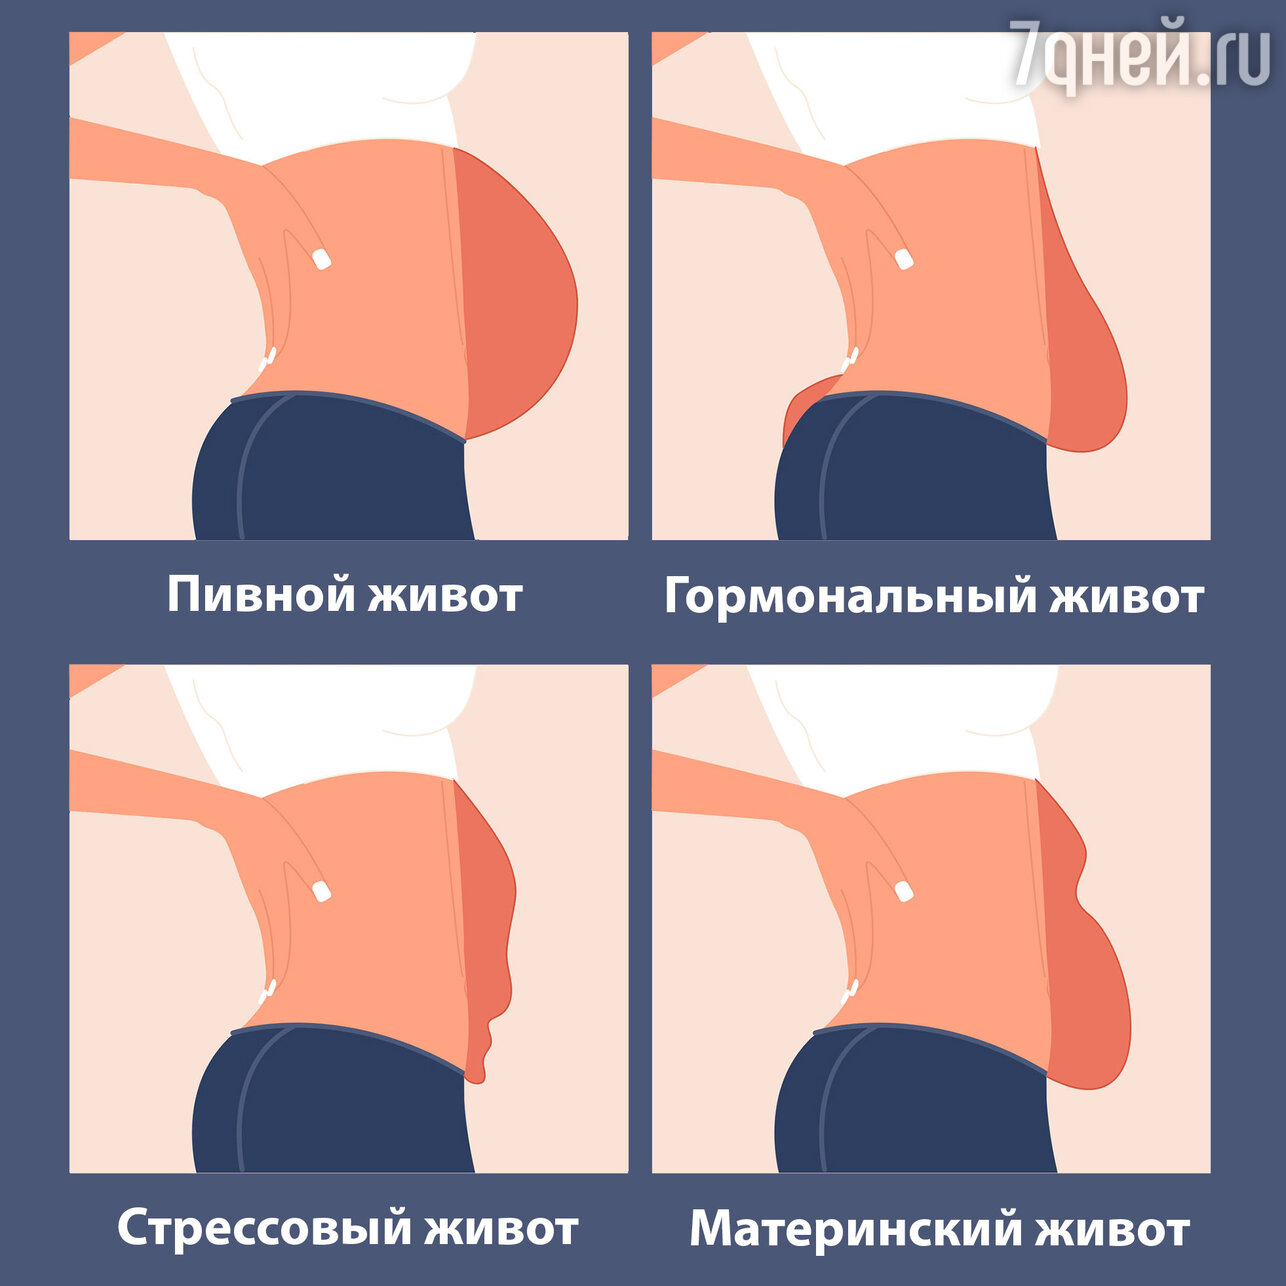 Не втянуть: почему у женщин появляется гормональный живот и как его убрать - 7Дней.ру